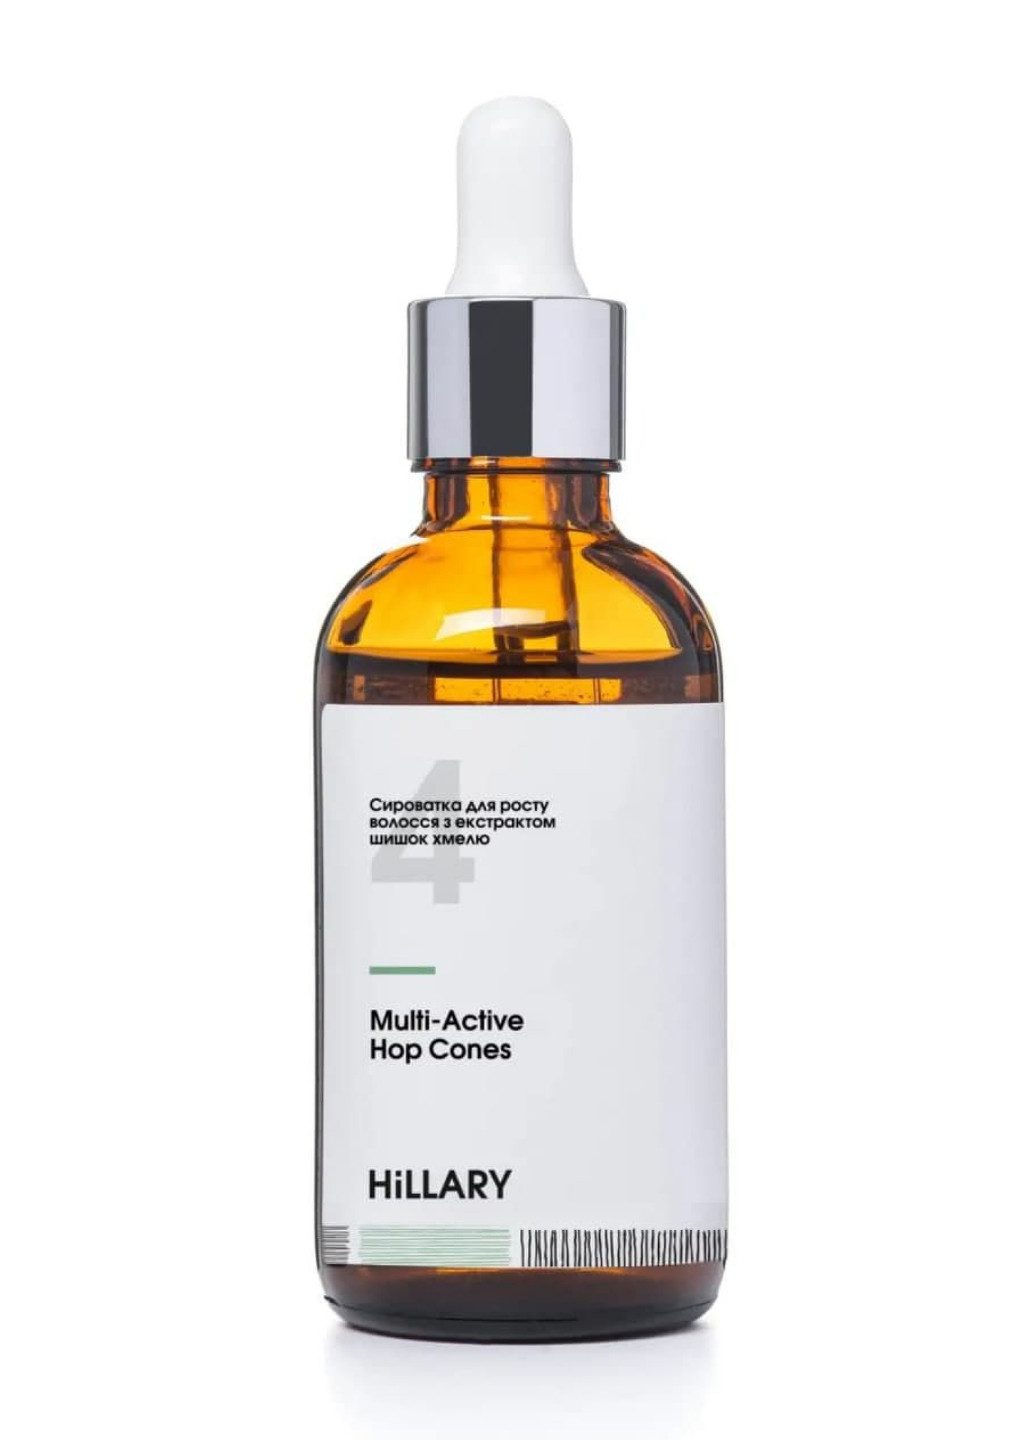 Ензимний пілінг для шкіри голови + Сироватка для росту волосся MULTI-ACTIVE HOP CONES Hillary (260375890)